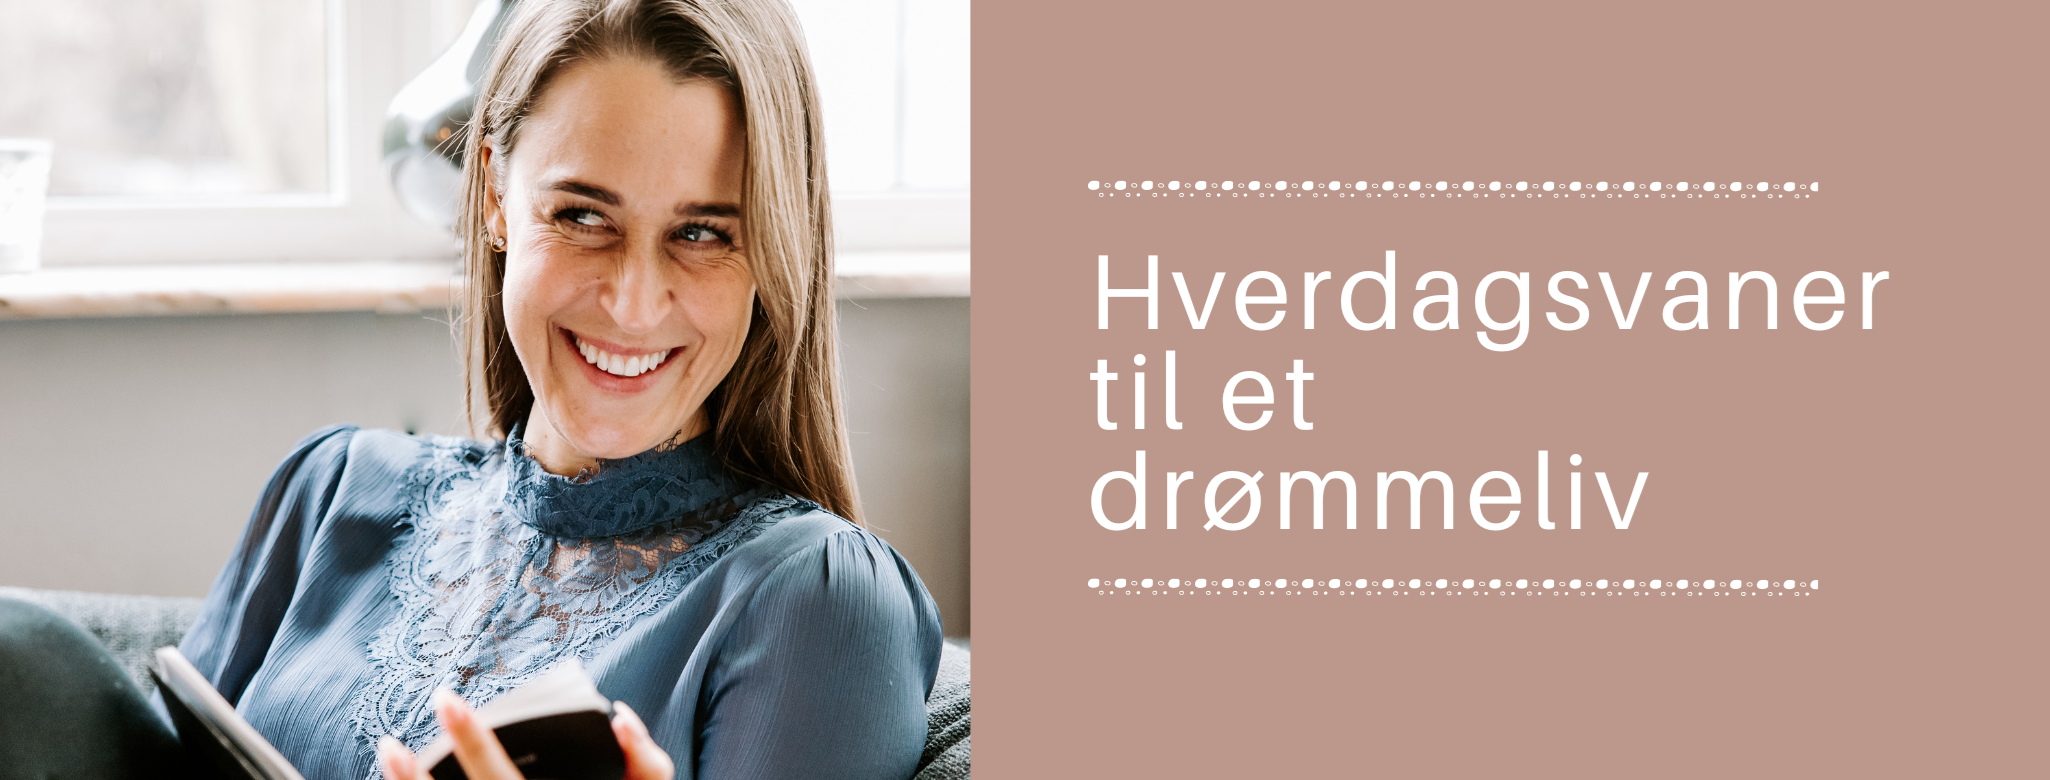 hverdagsvaner til et drømmeliv - julie-lykke.dk